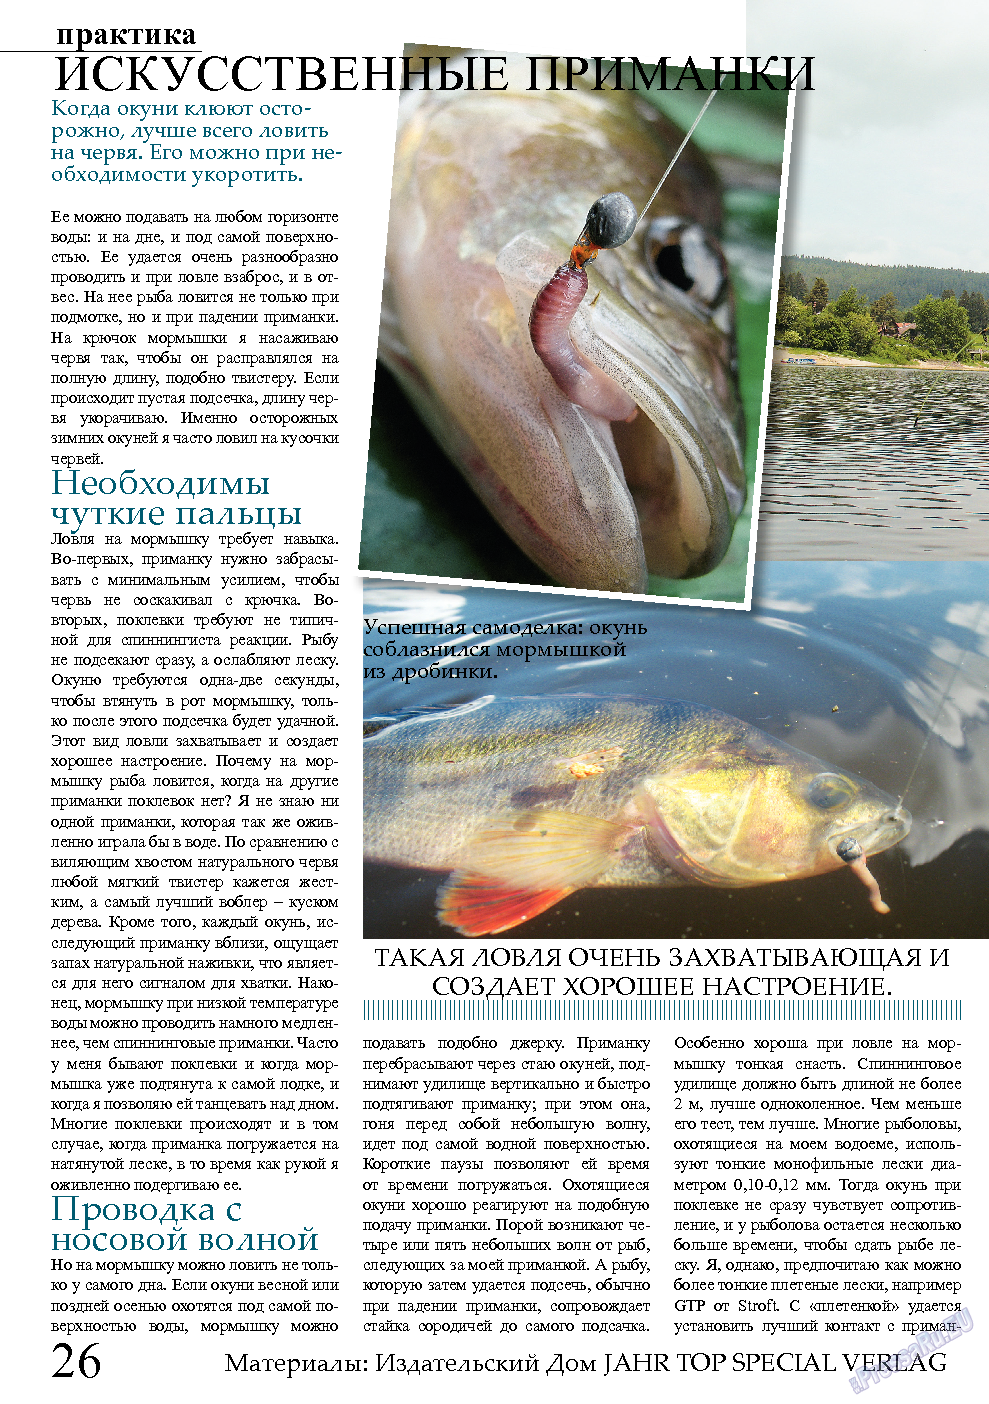 Рыбалка Plus, журнал. 2013 №11 стр.26